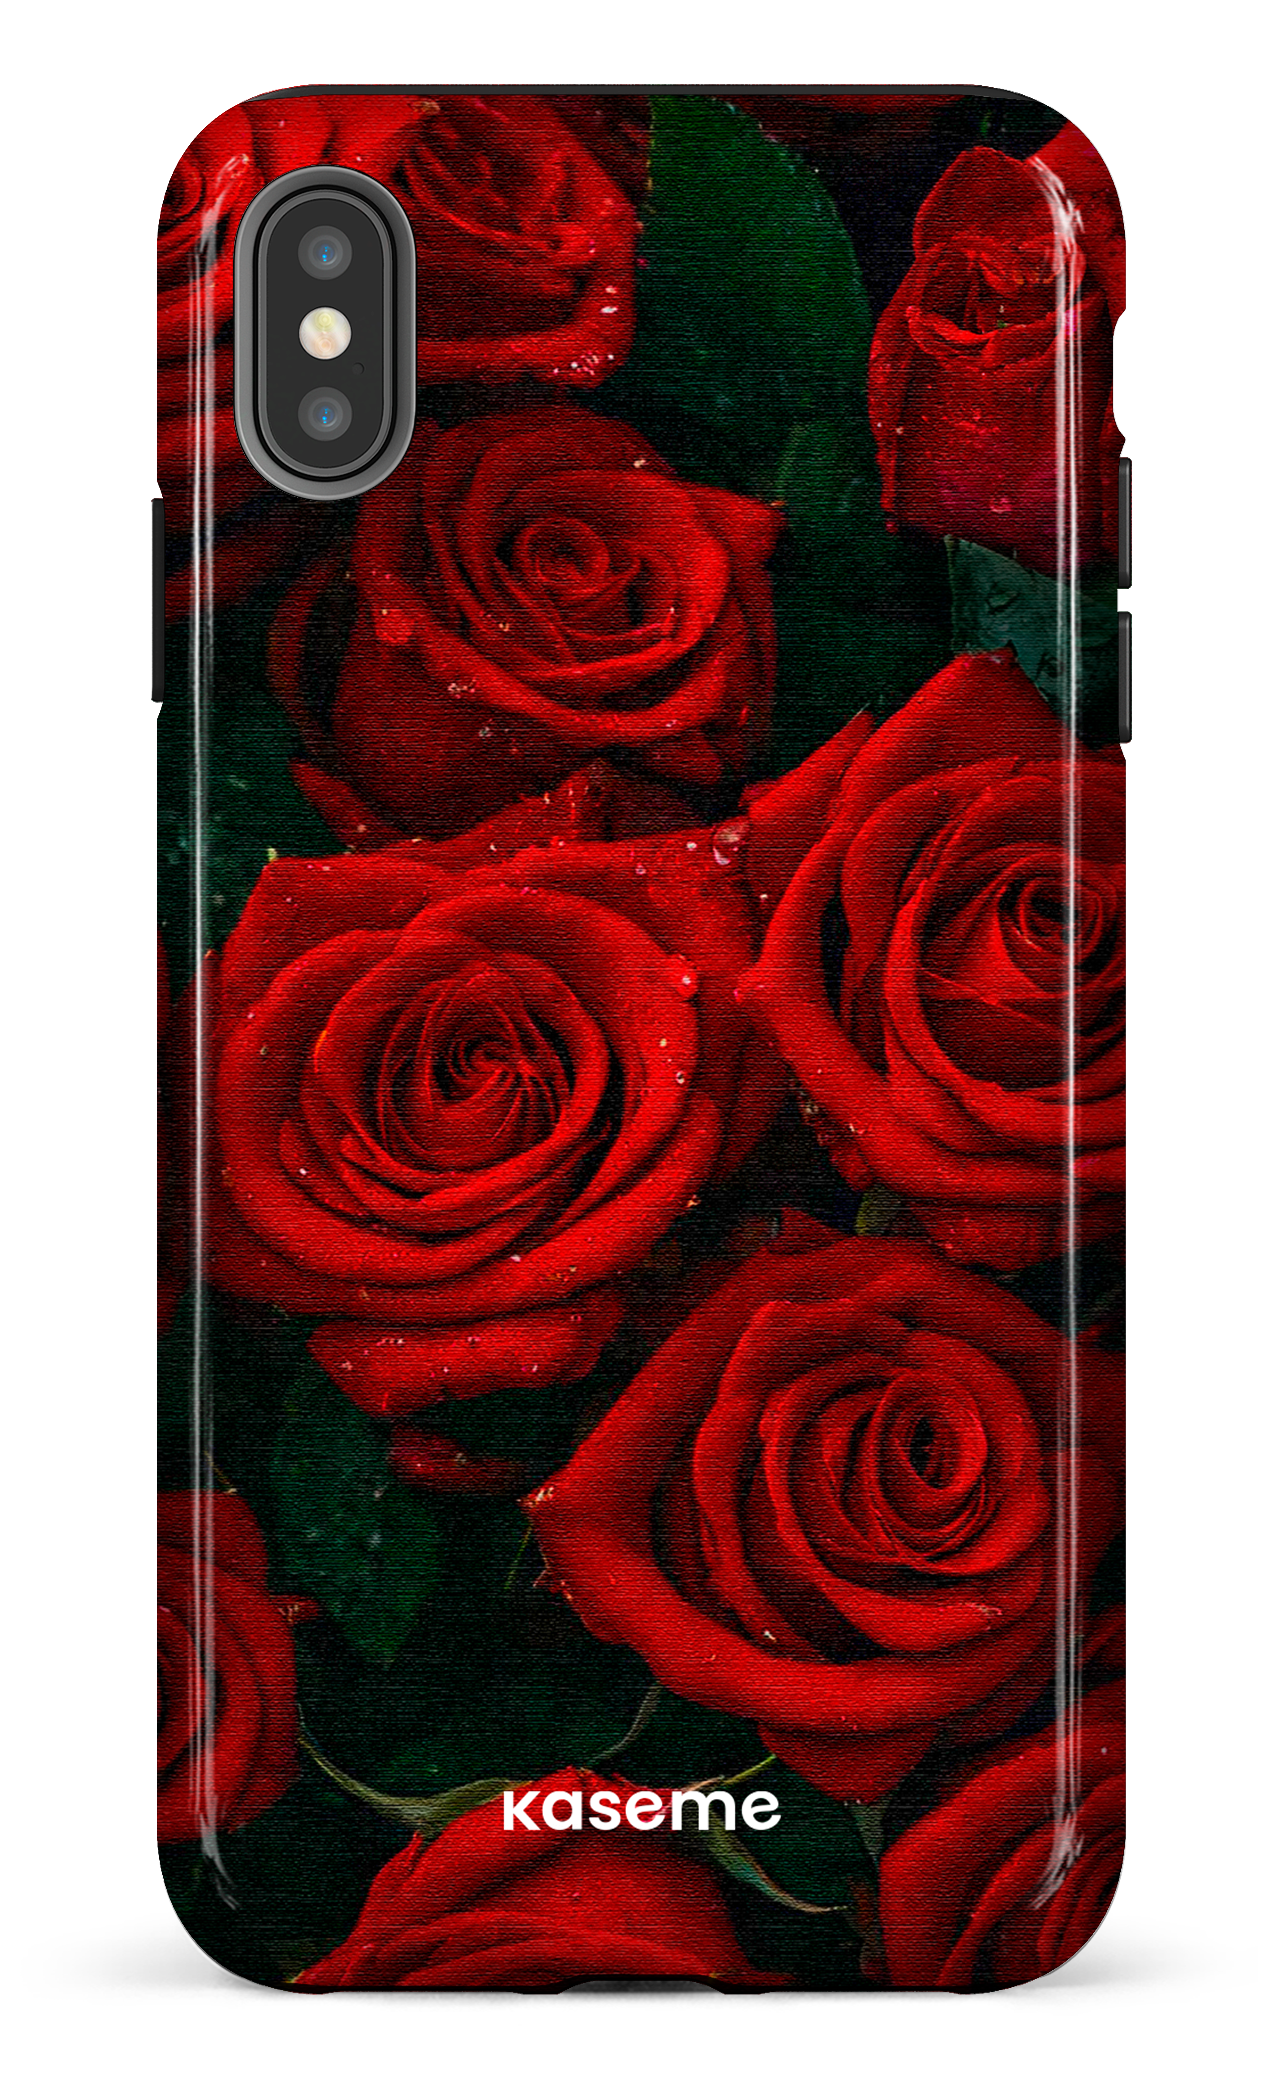 Romance - iPhone XS Max